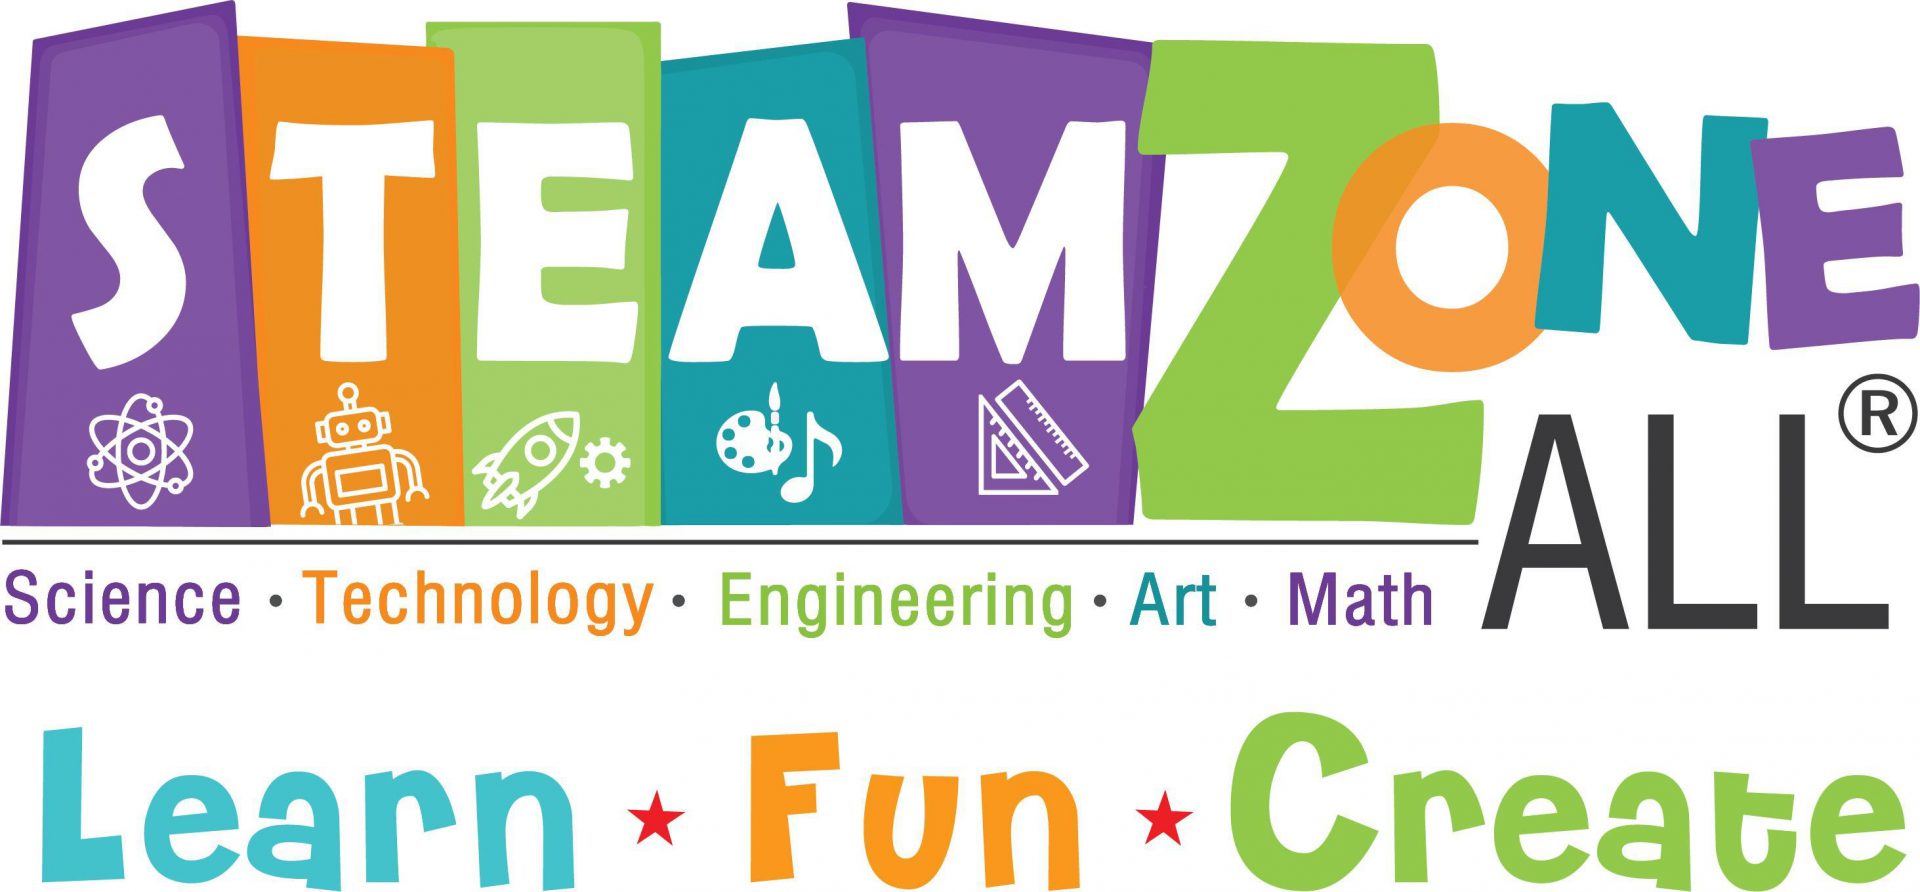 thiet ke website thienminhtech logo steamzone